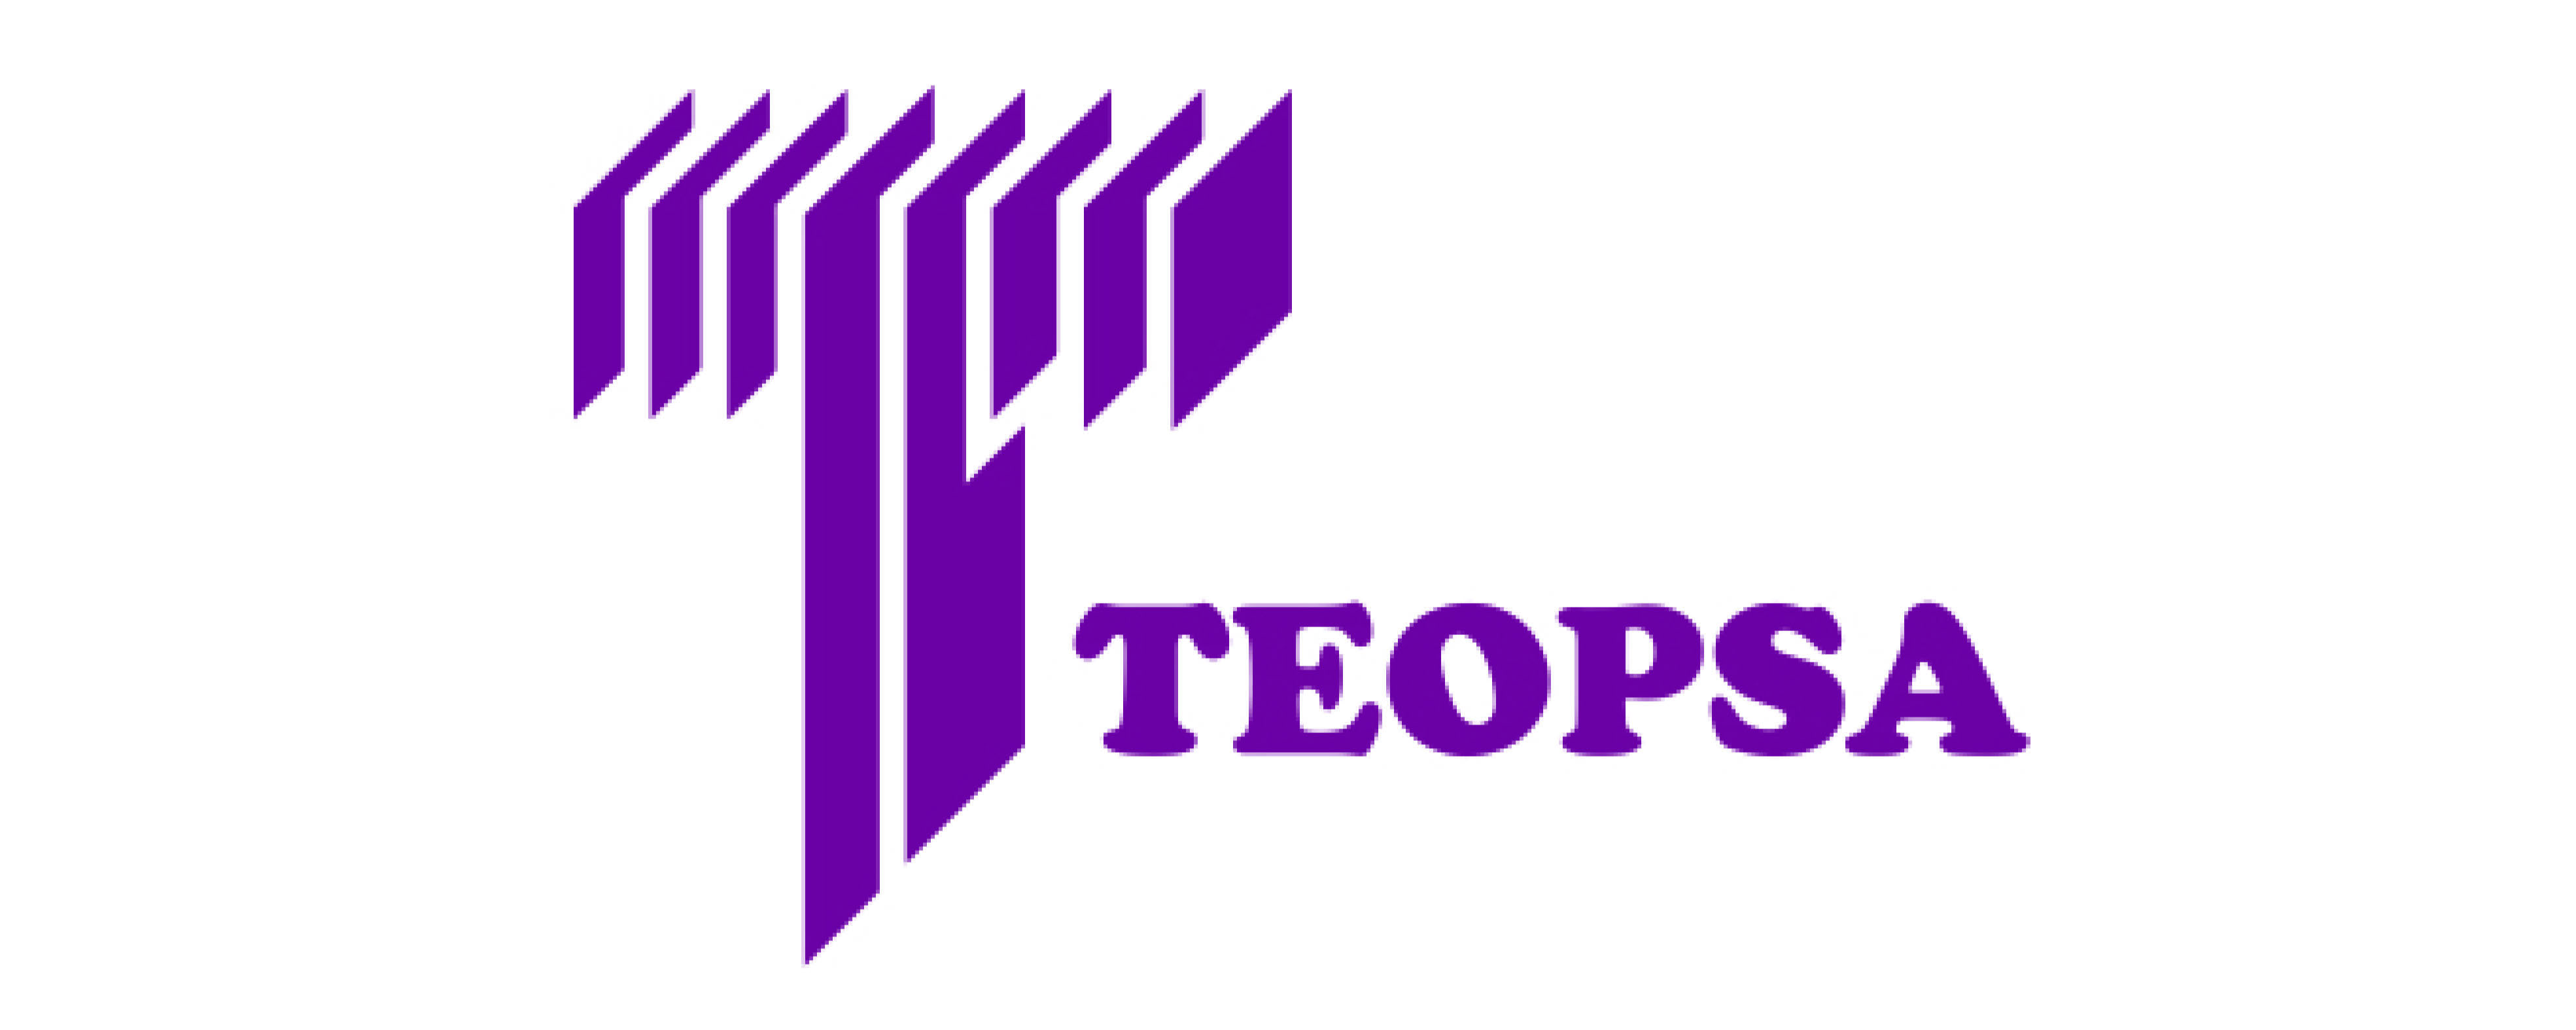 Teopsa